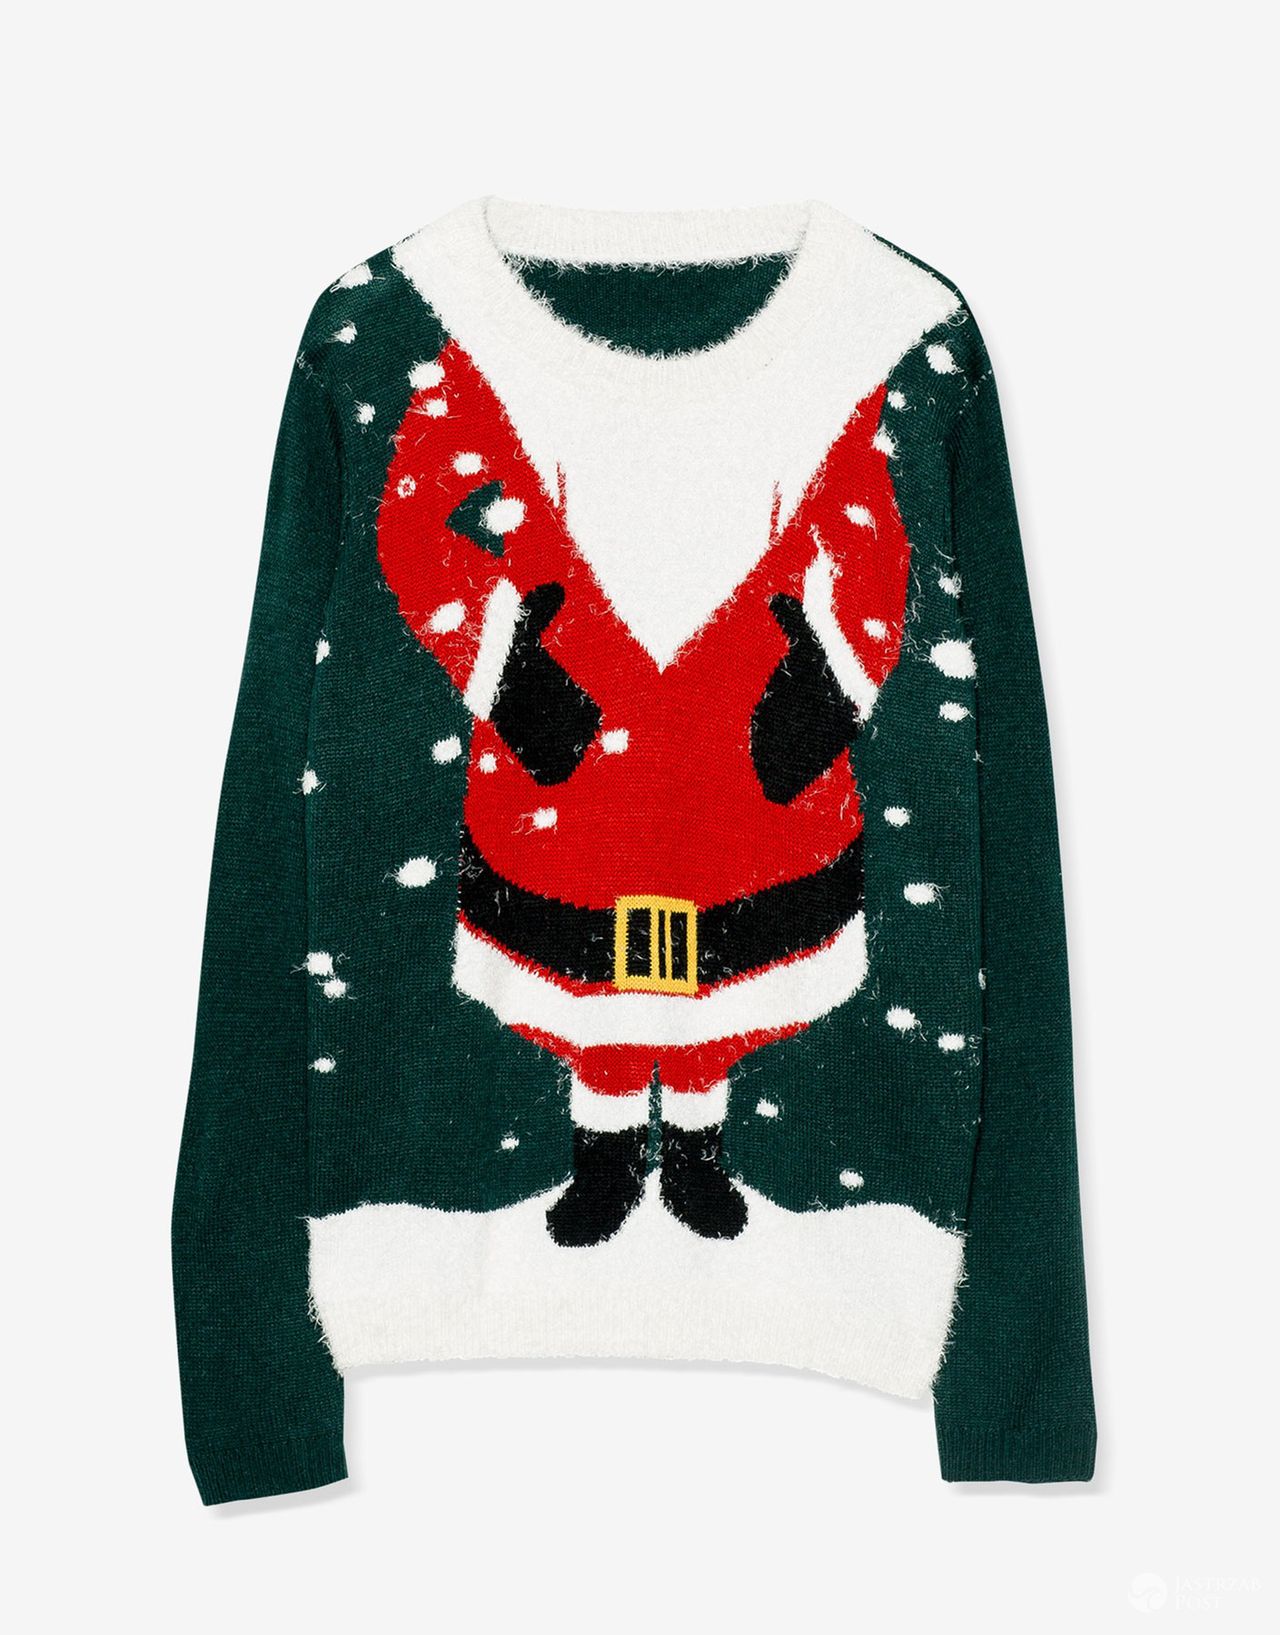 świąteczny sweter damski Pull & Bear, cena: 119zł